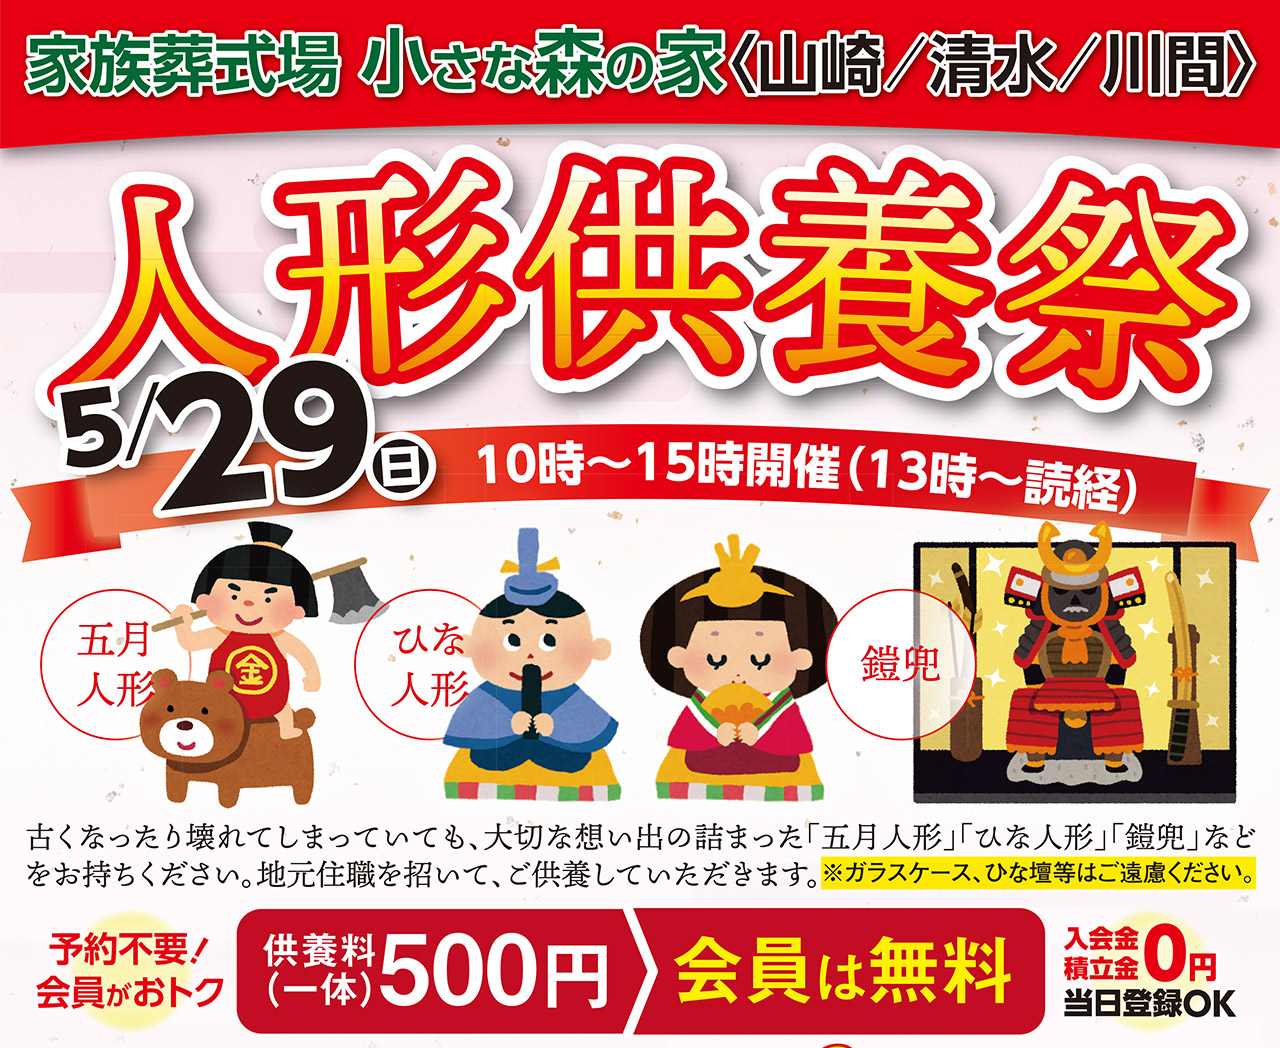 3/21(月/祝)鎌ヶ谷大仏・取手白山で人形供養祭を開催いたします！のイメージ画像